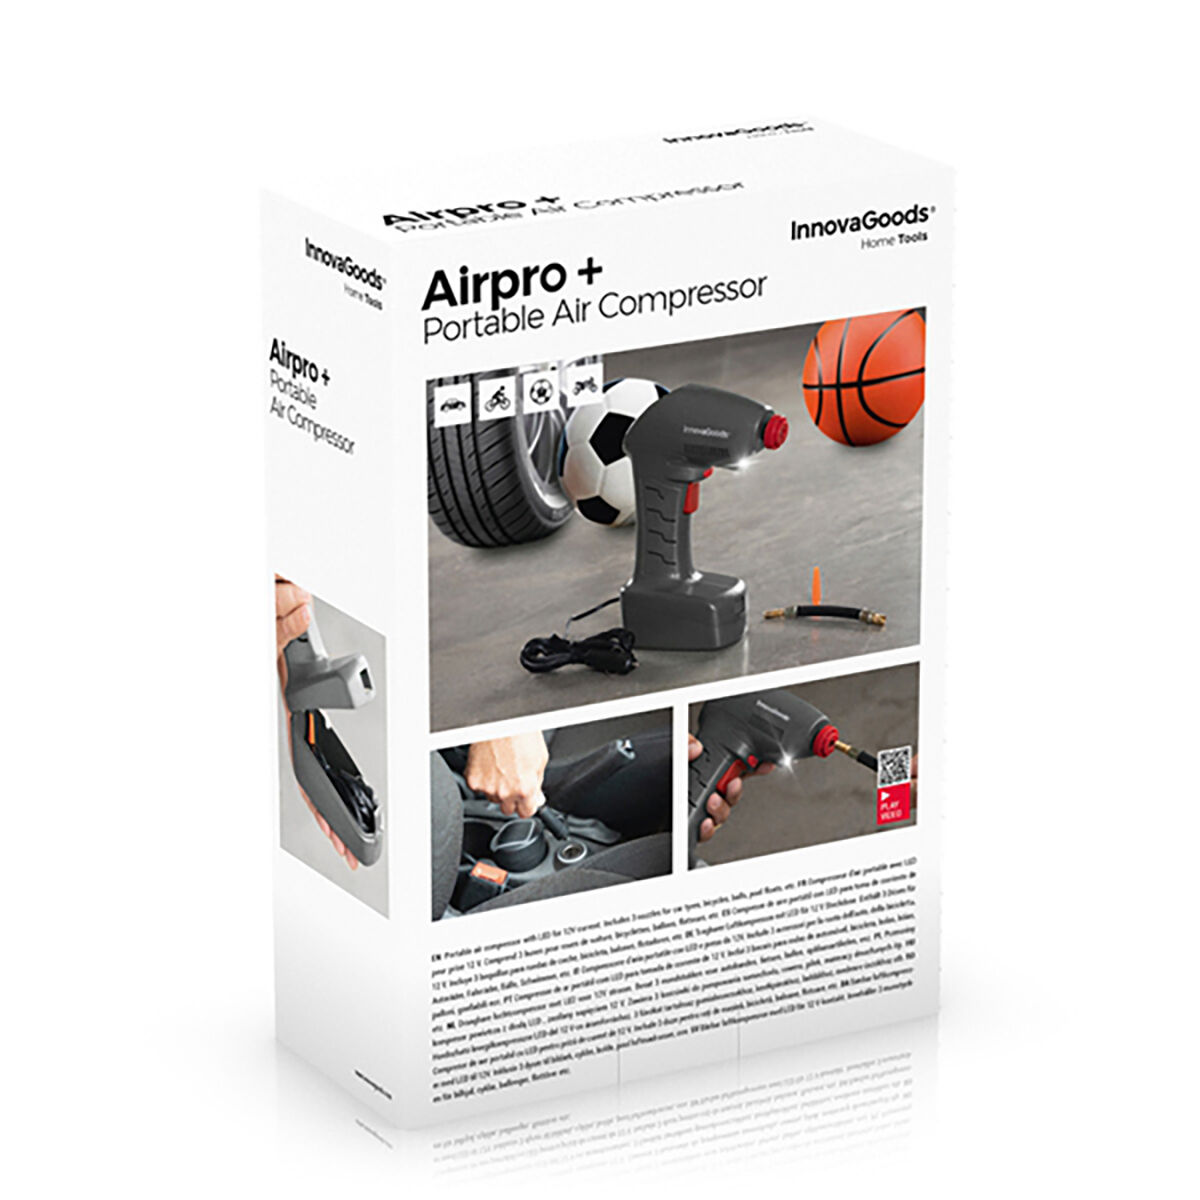 Compressore d'Aria Portatile con LED Airpro+ InnovaGoods